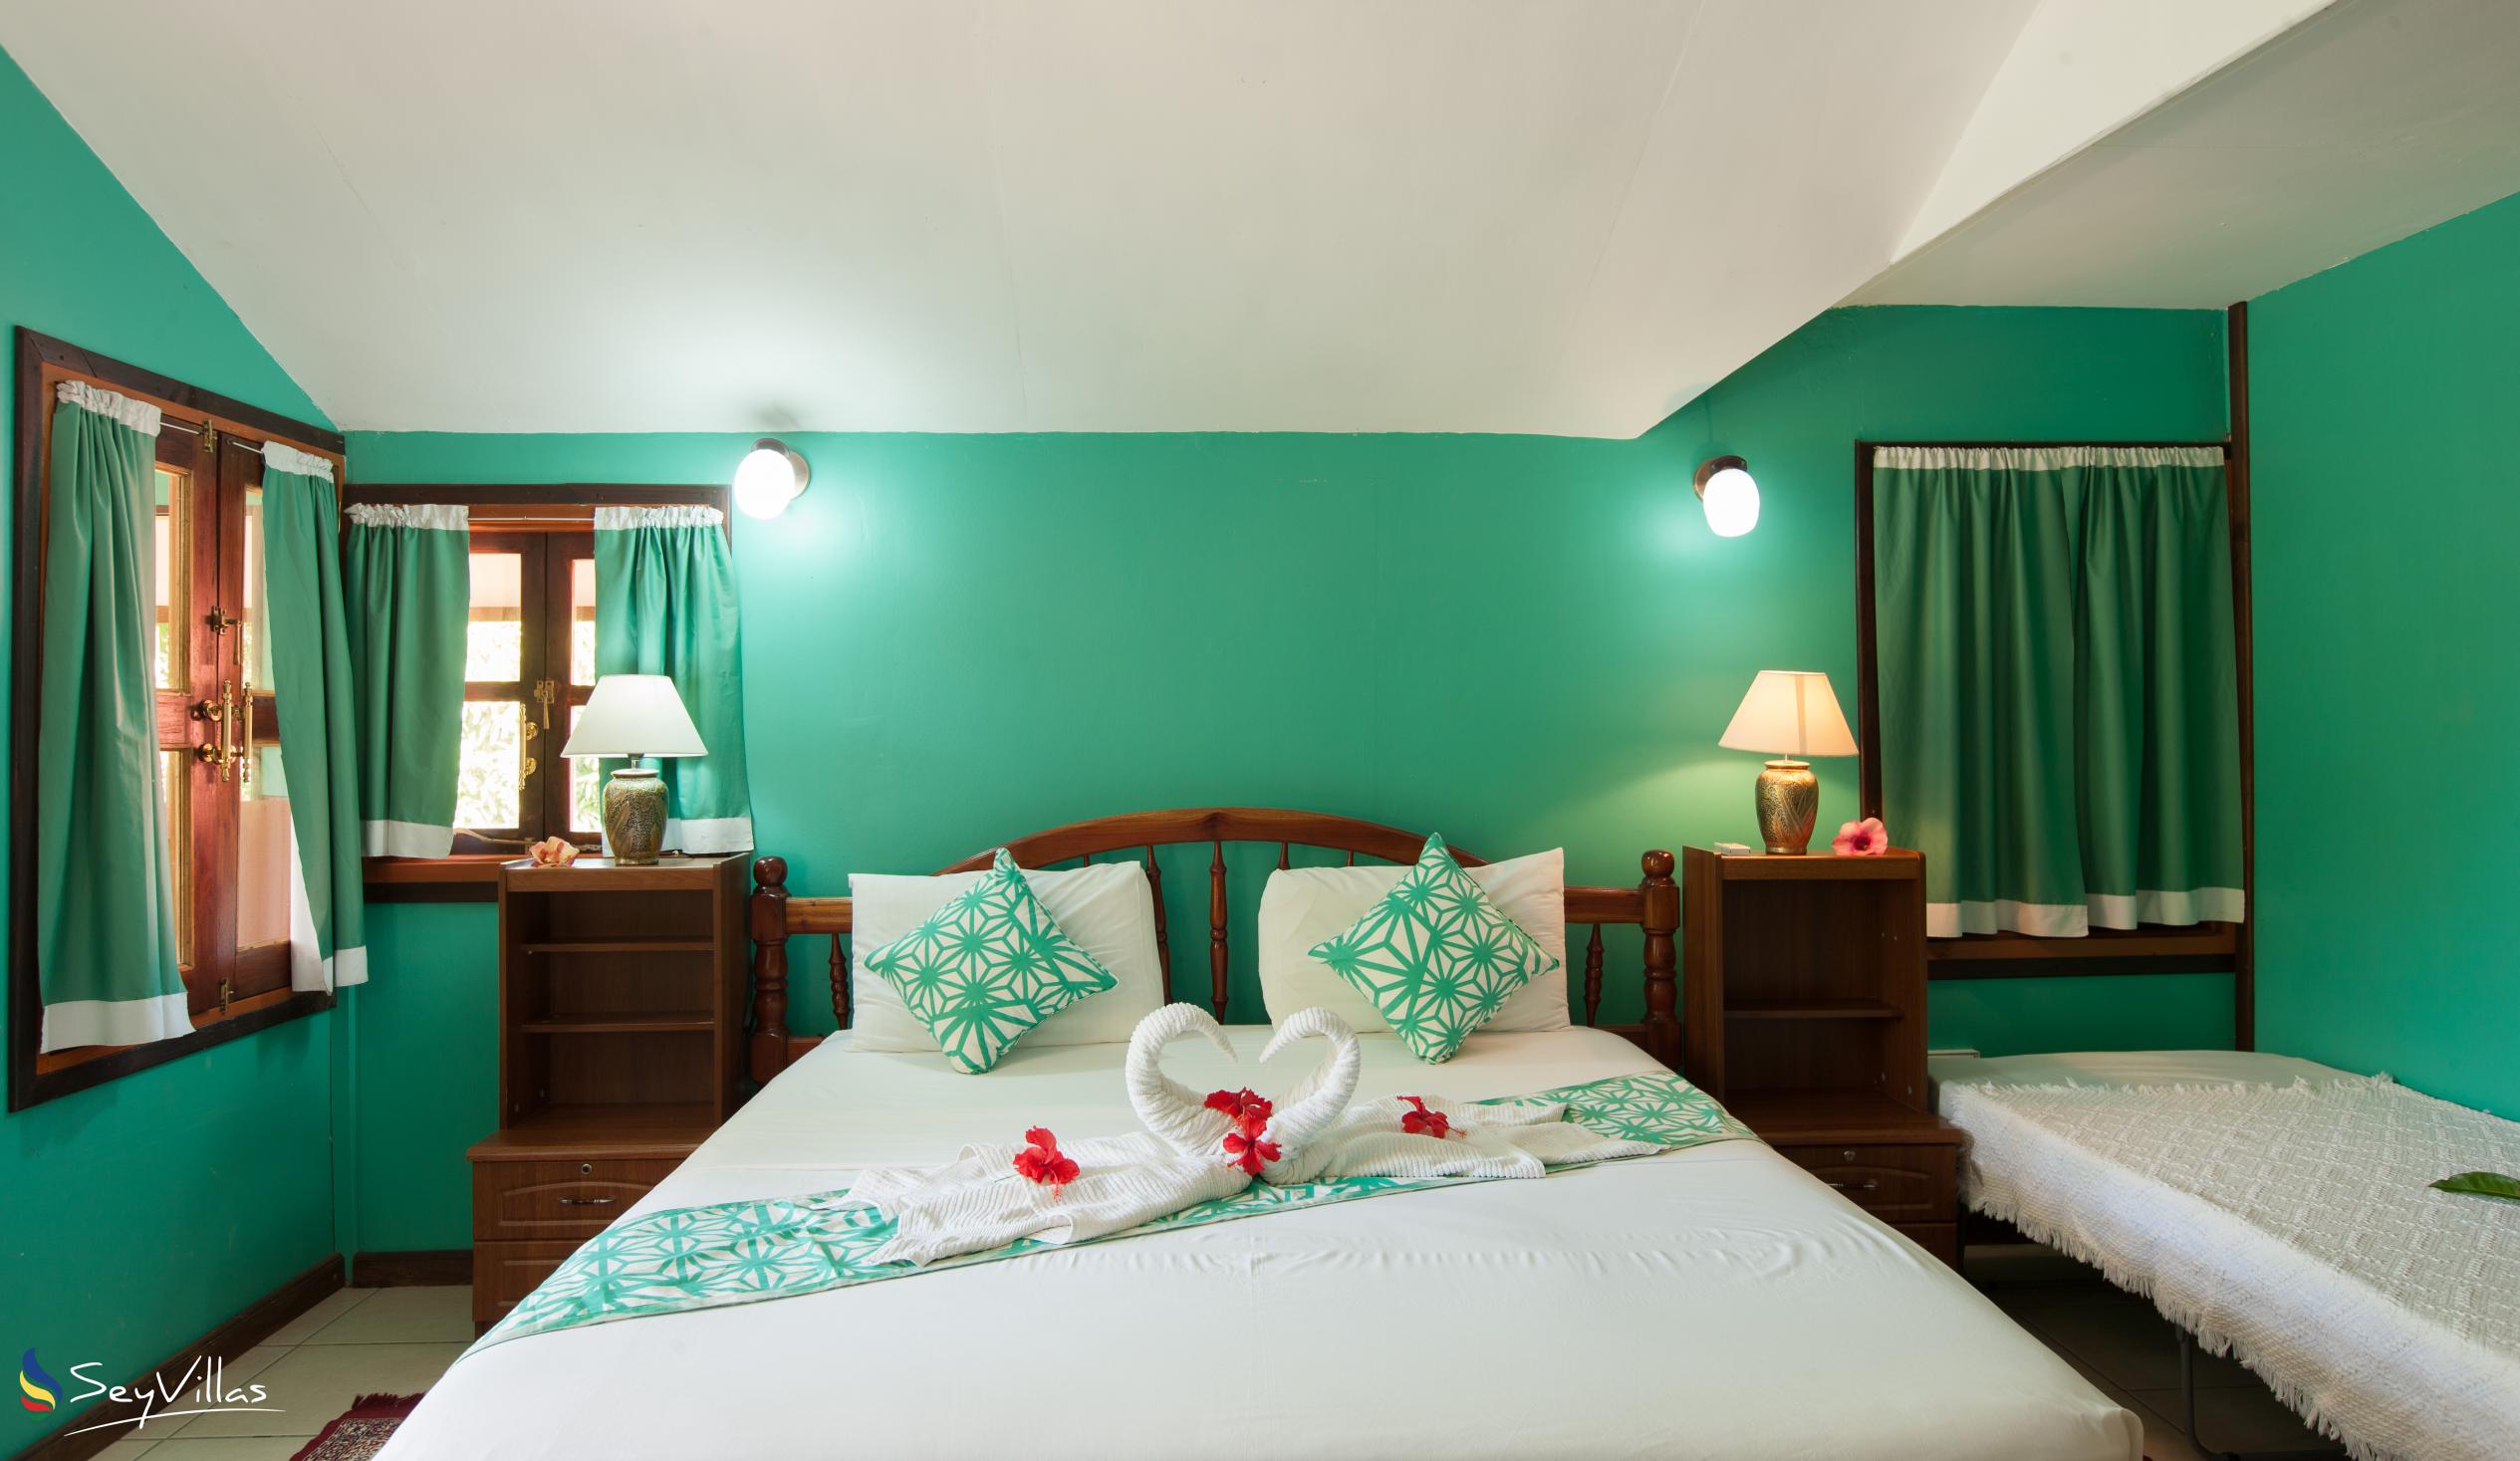 Photo 49: Belle des Iles Guest House - Double Room with Balcony - La Digue (Seychelles)